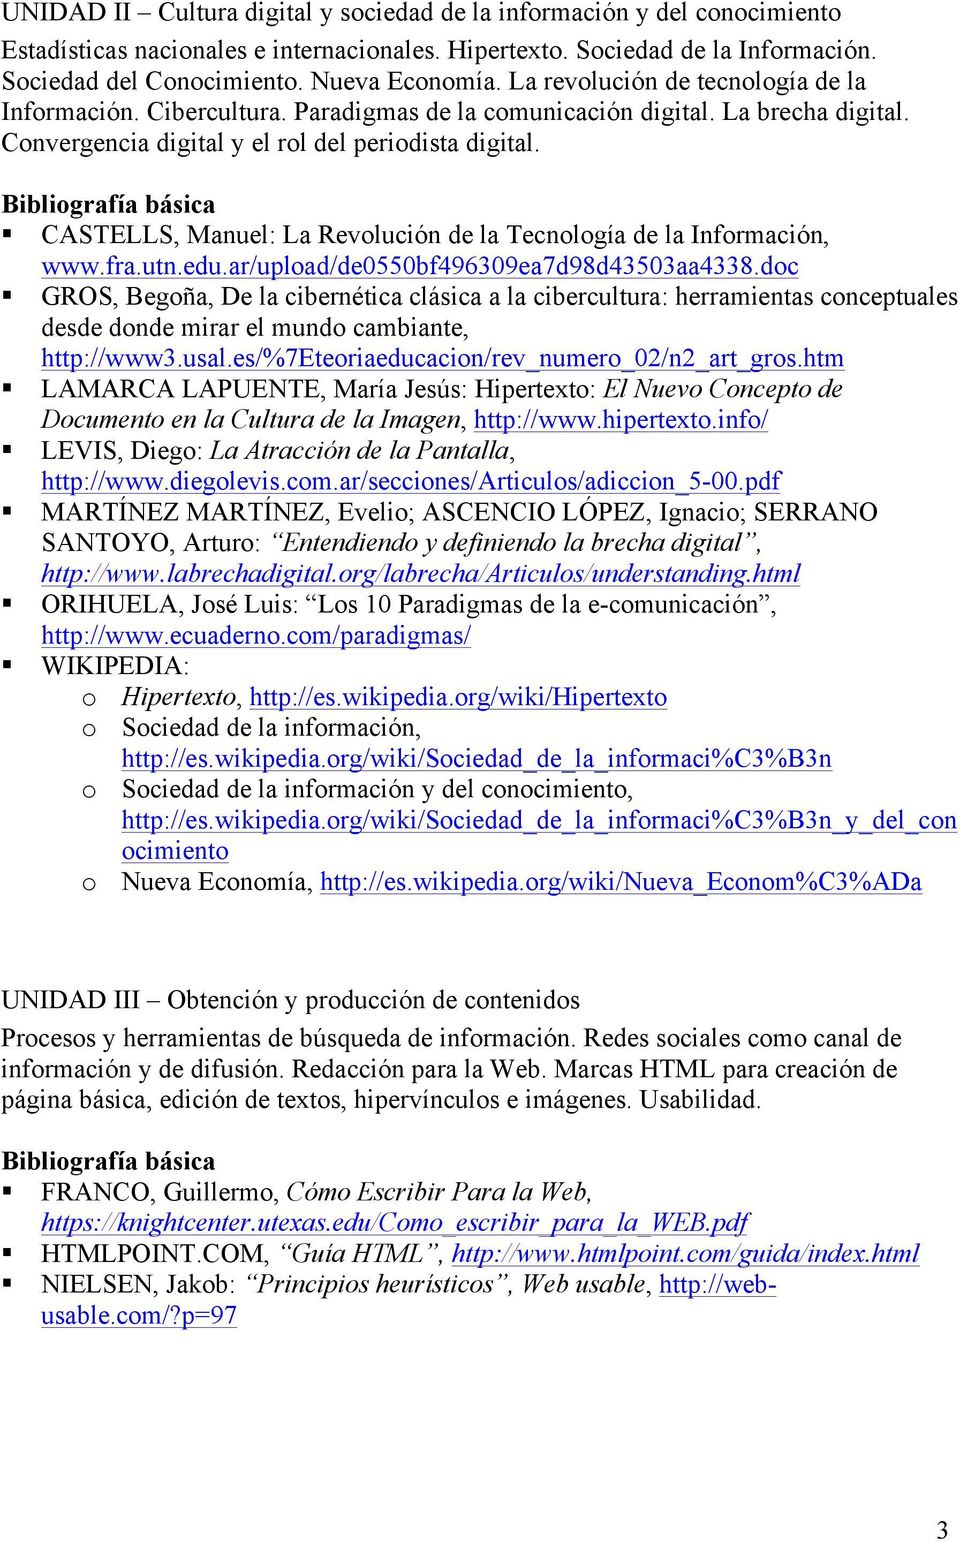 ! CASTELLS, Manuel: La Revolución de la Tecnología de la Información, www.fra.utn.edu.ar/upload/de0550bf496309ea7d98d43503aa4338.doc!